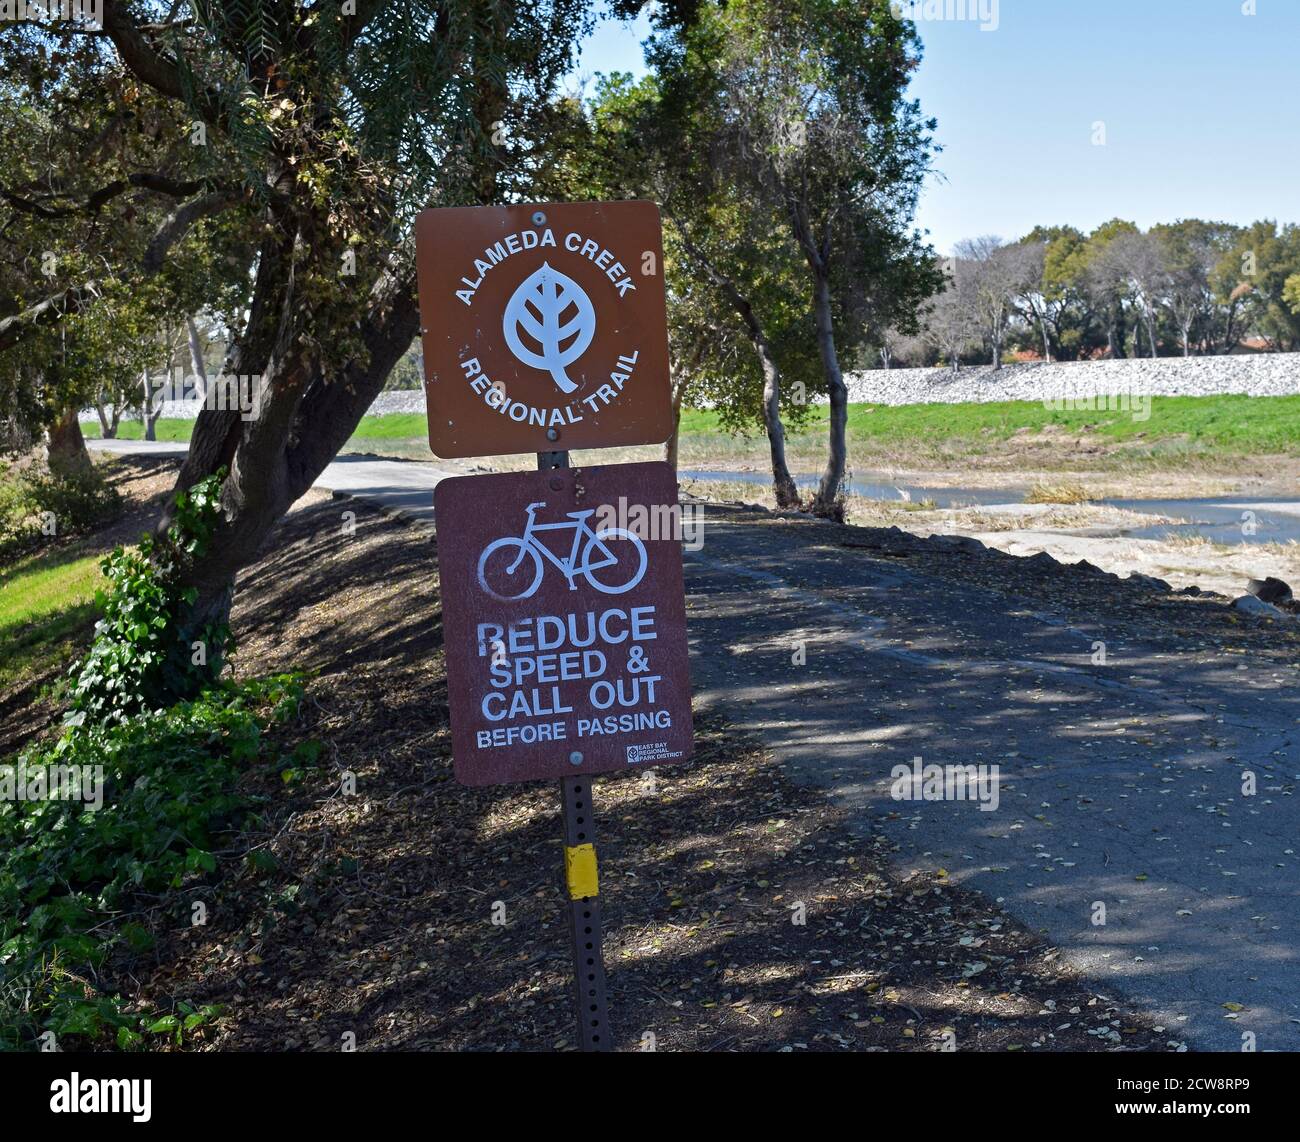 Alameda Creek Trail, le biciclette riducono la velocità di richiamo prima di passare, cartello, East Bay Regional Trail, California Foto Stock